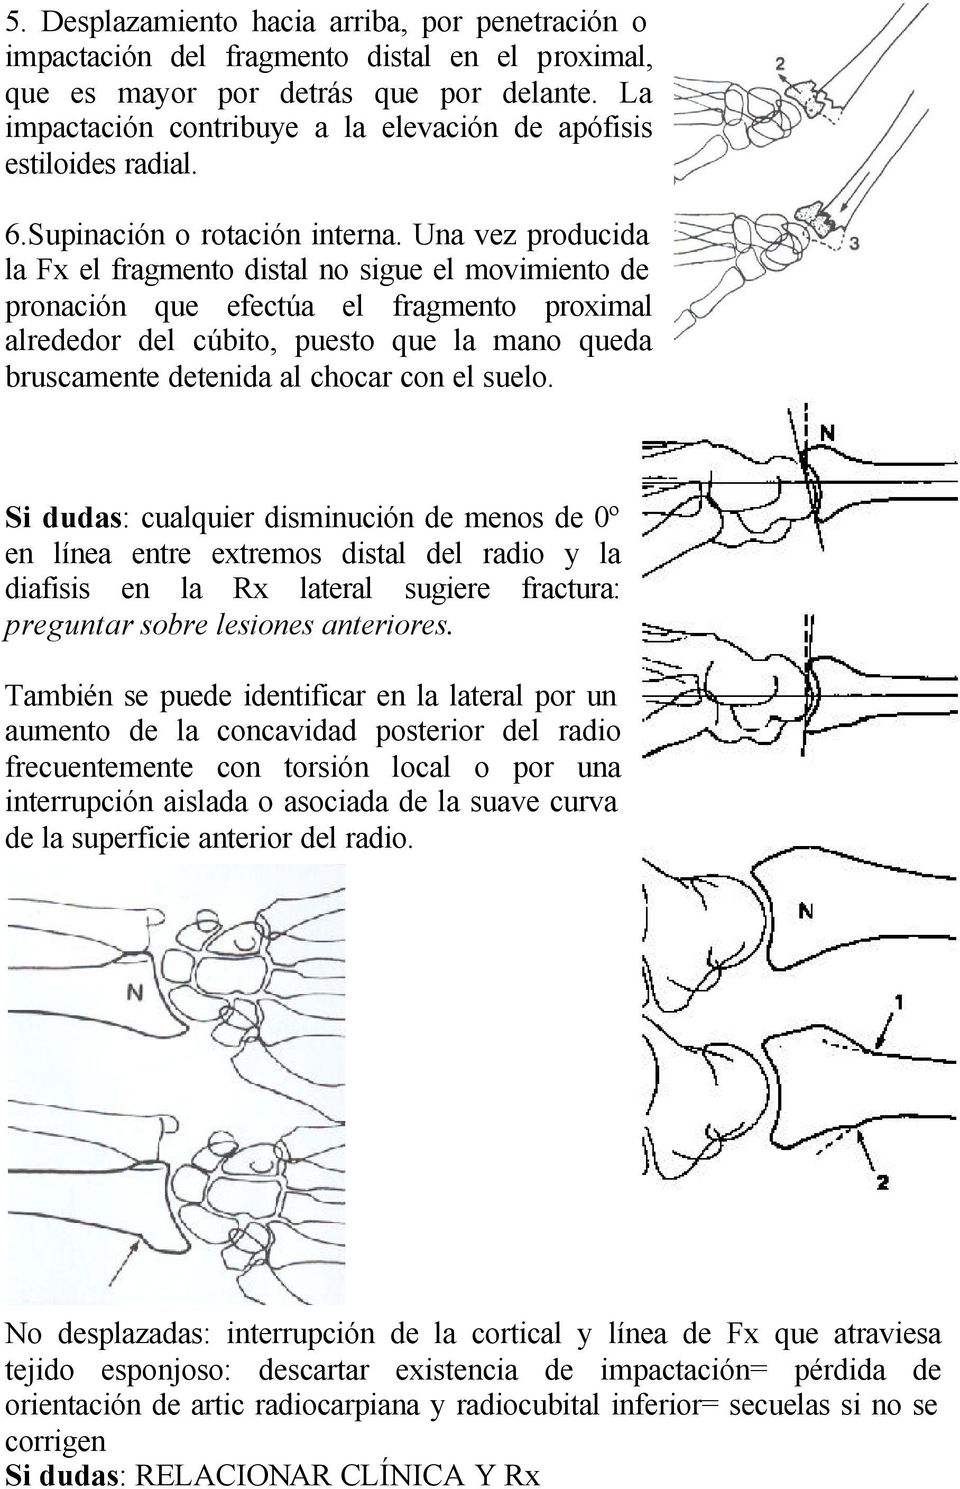 Una vez producida la Fx el fragmento distal no sigue el movimiento de pronación que efectúa el fragmento proximal alrededor del cúbito, puesto que la mano queda bruscamente detenida al chocar con el